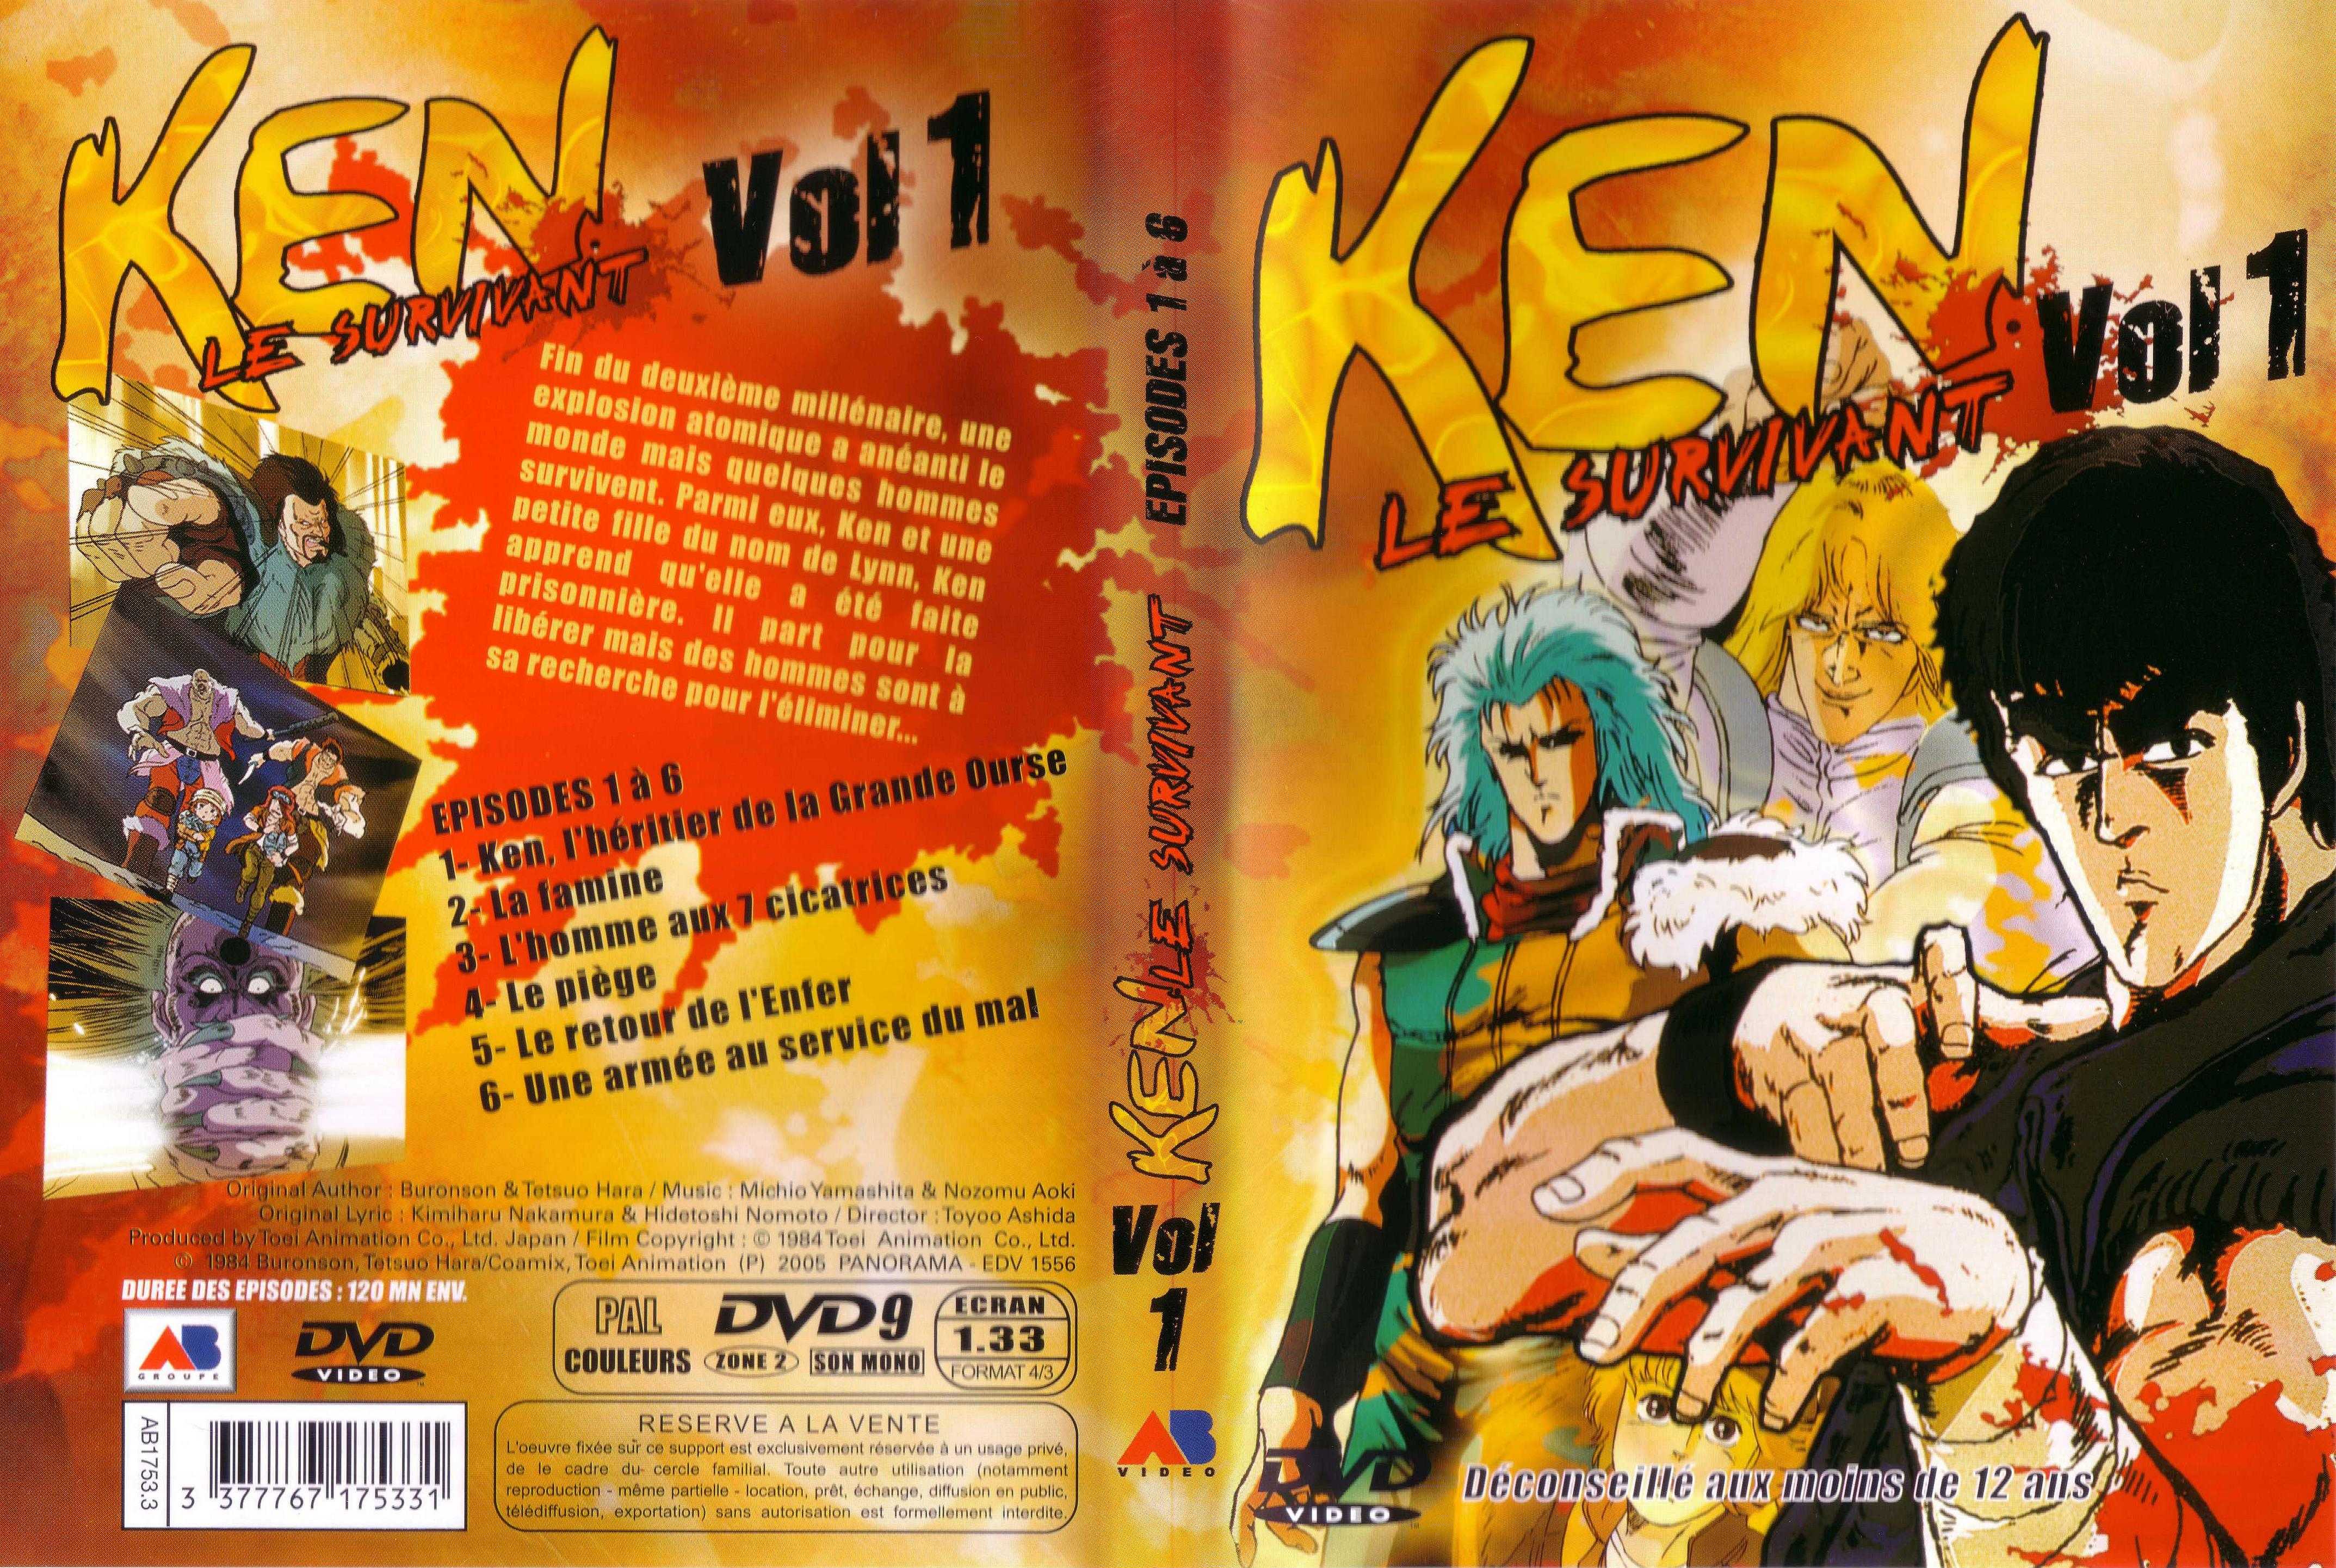 Jaquette DVD Ken le survivant vol 1